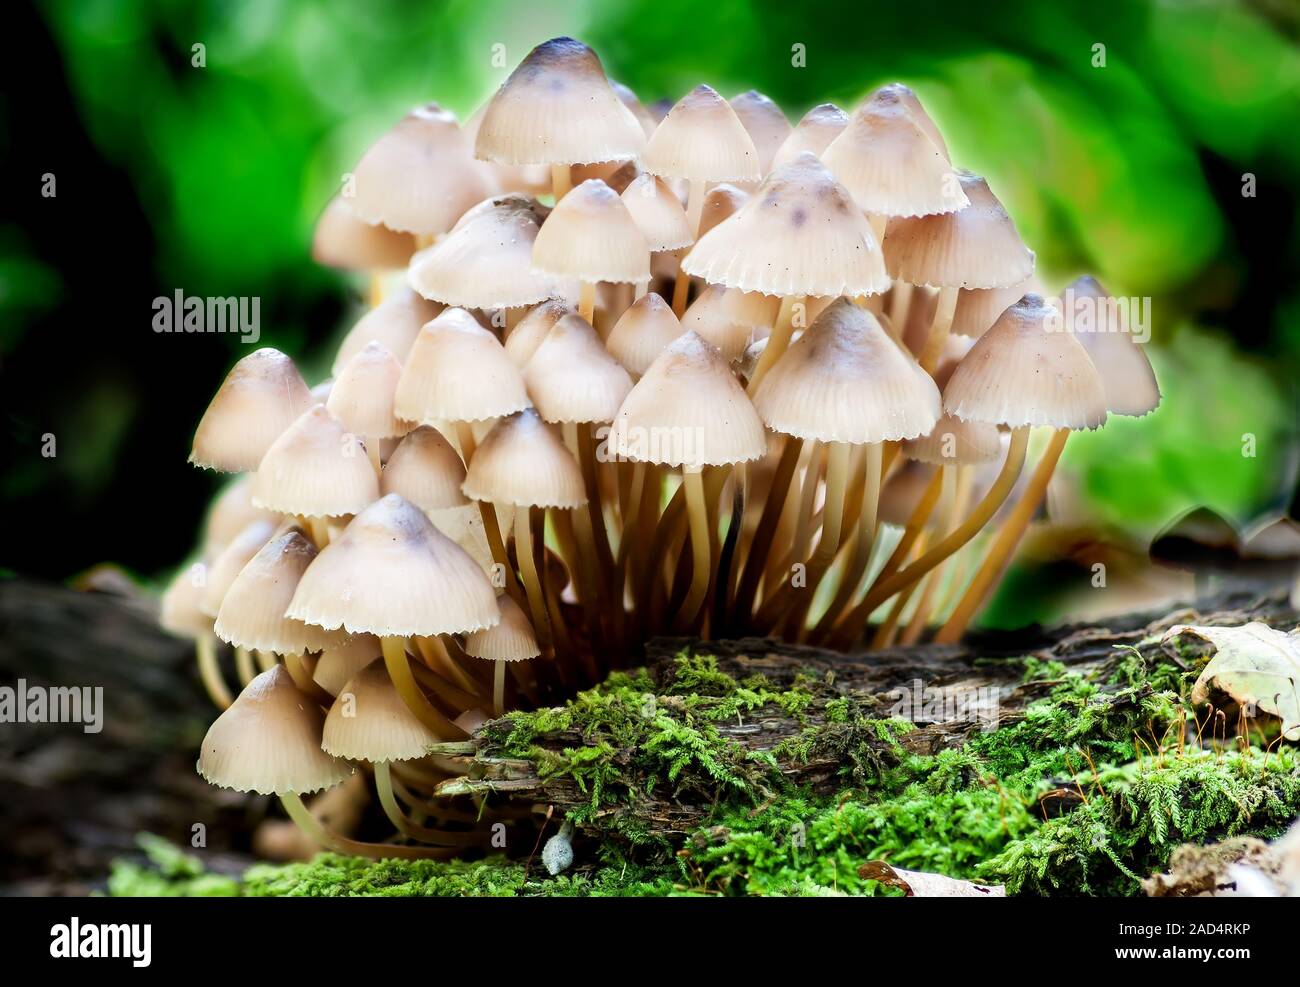 Group toadstools mushrooms on a tree stump Stock Photo